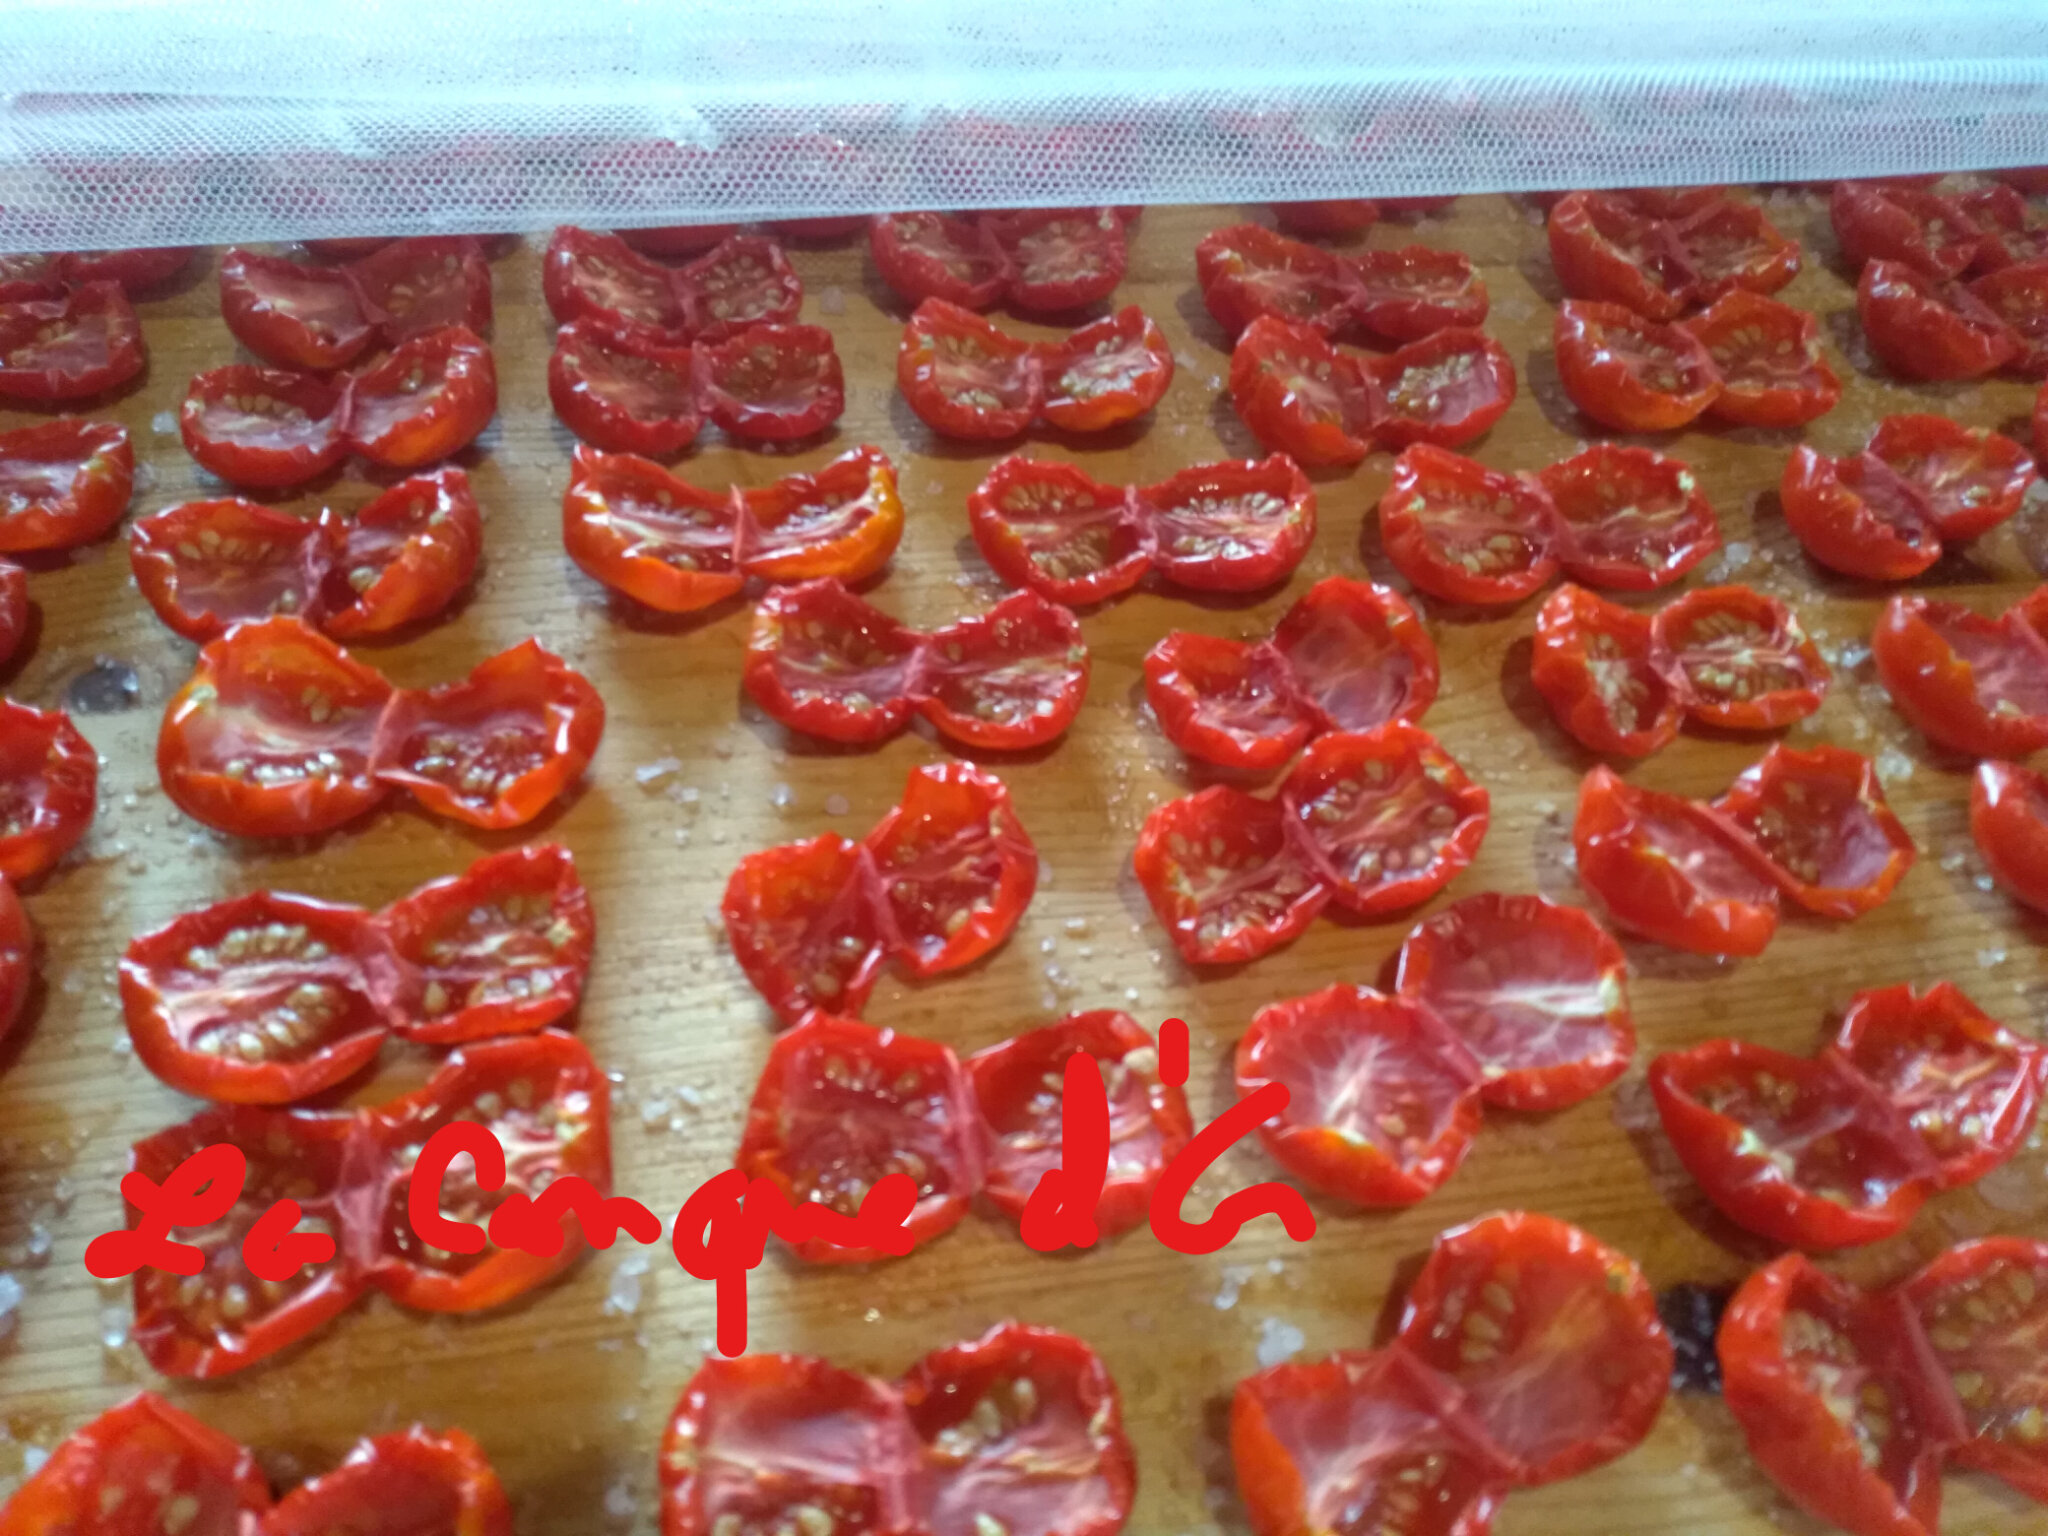 Tomates Séchées - Sachet zip de 100g